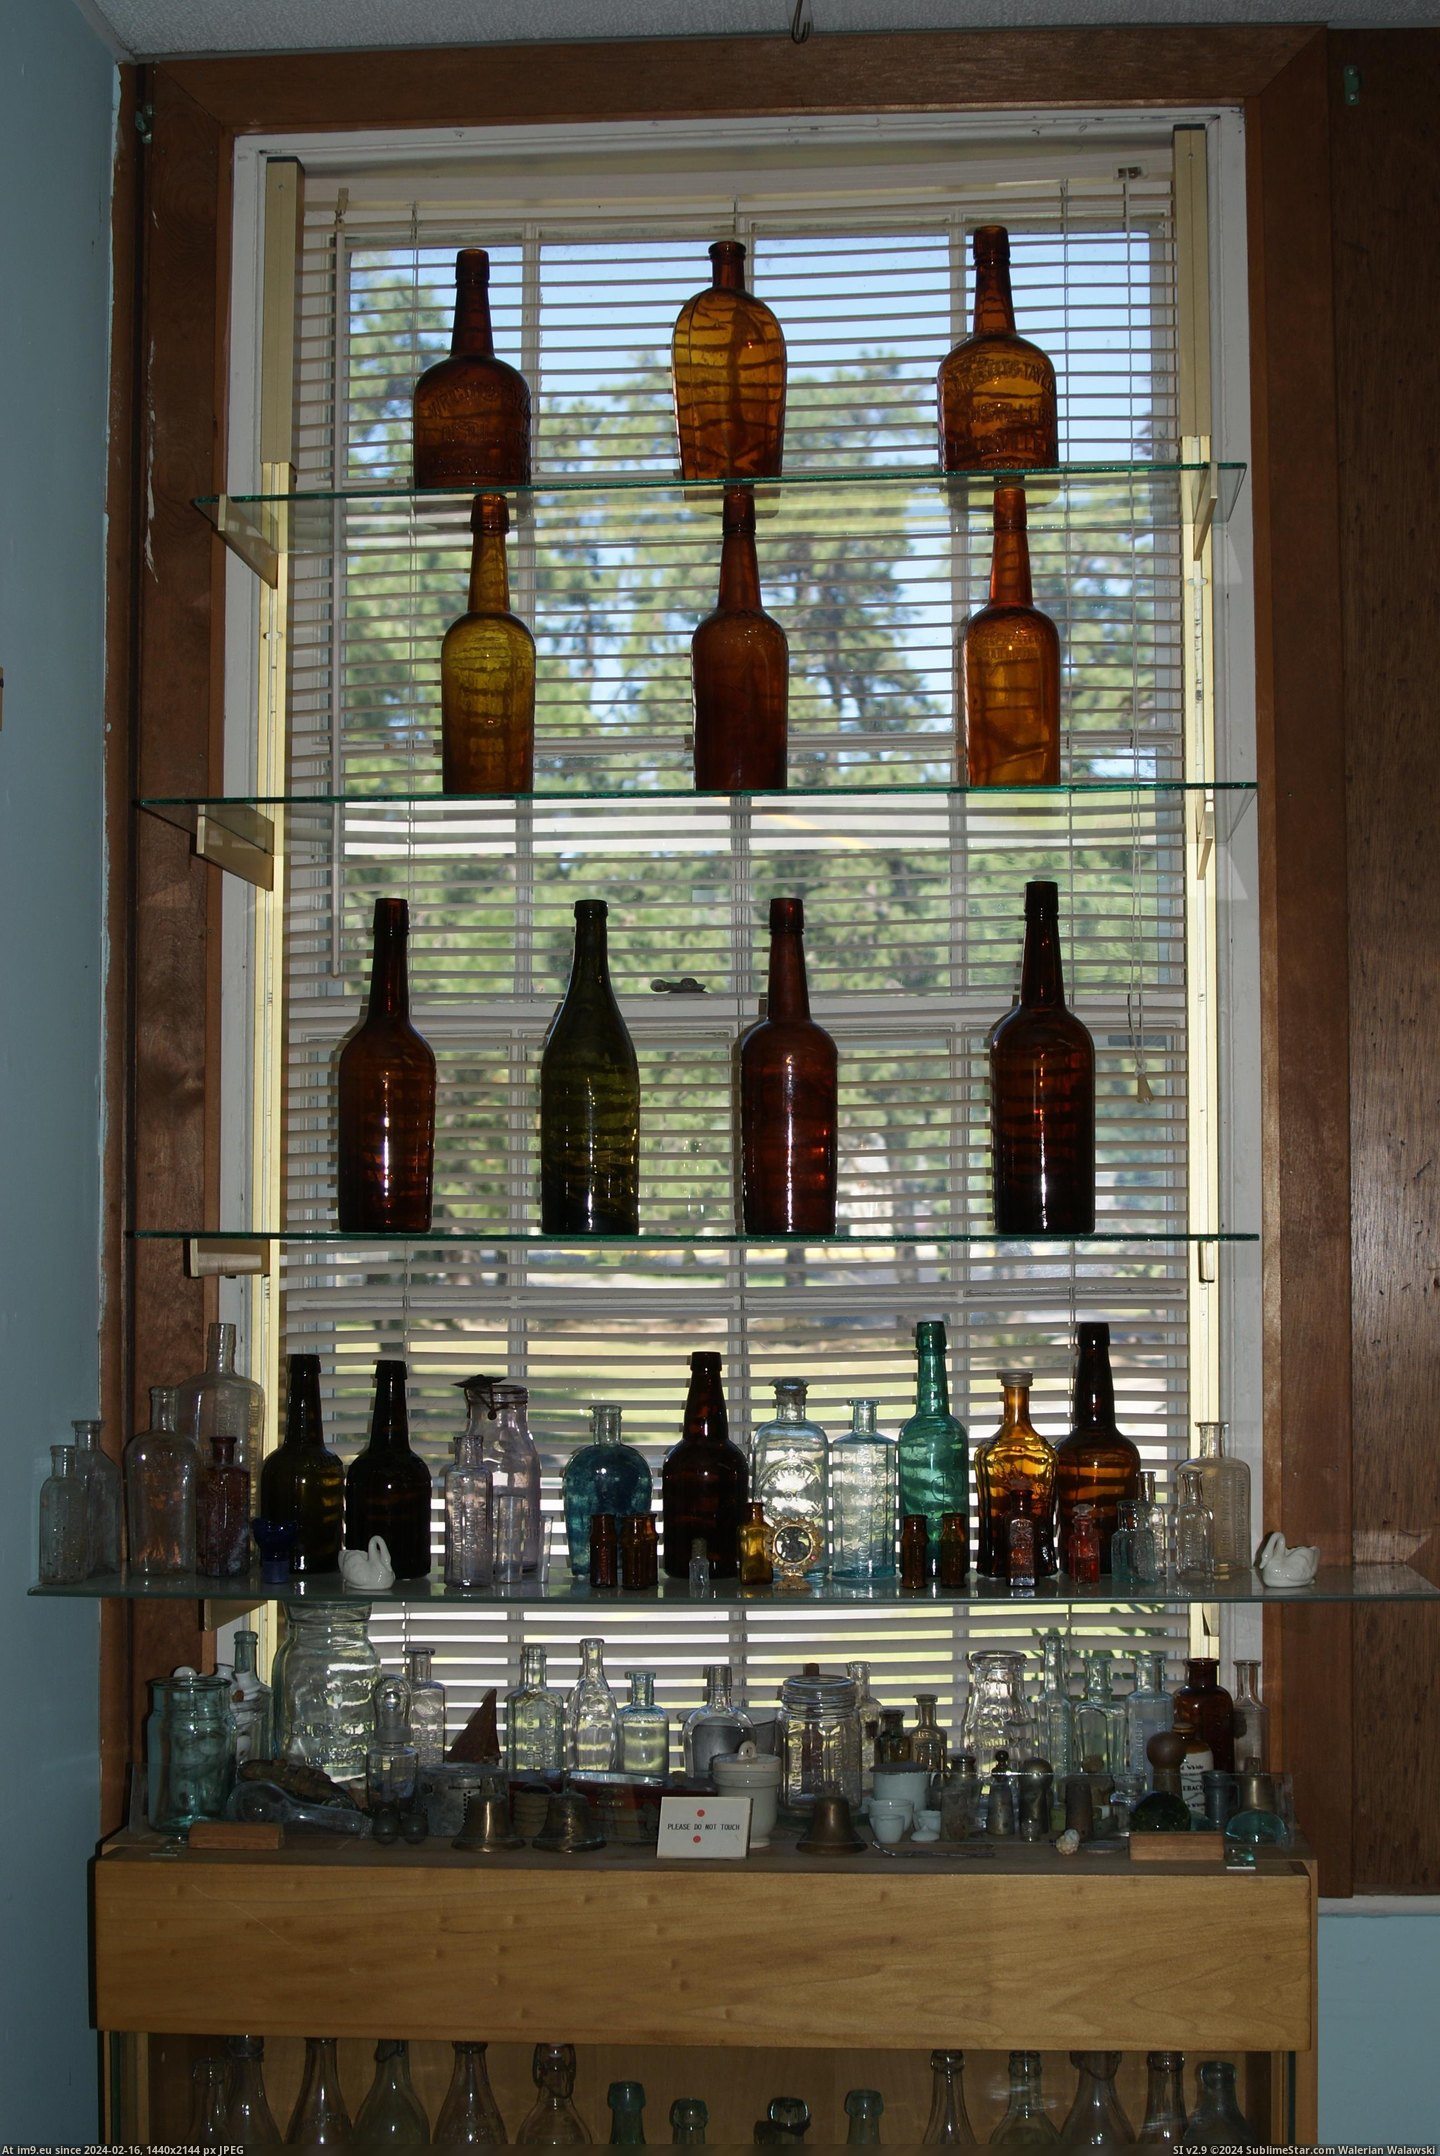 #Museum #Maine #Naples #Bottle MAINE BOTTLE MUSEUM NAPLES (9) Pic. (Obraz z album MAINE BOTTLE MUSEUM))